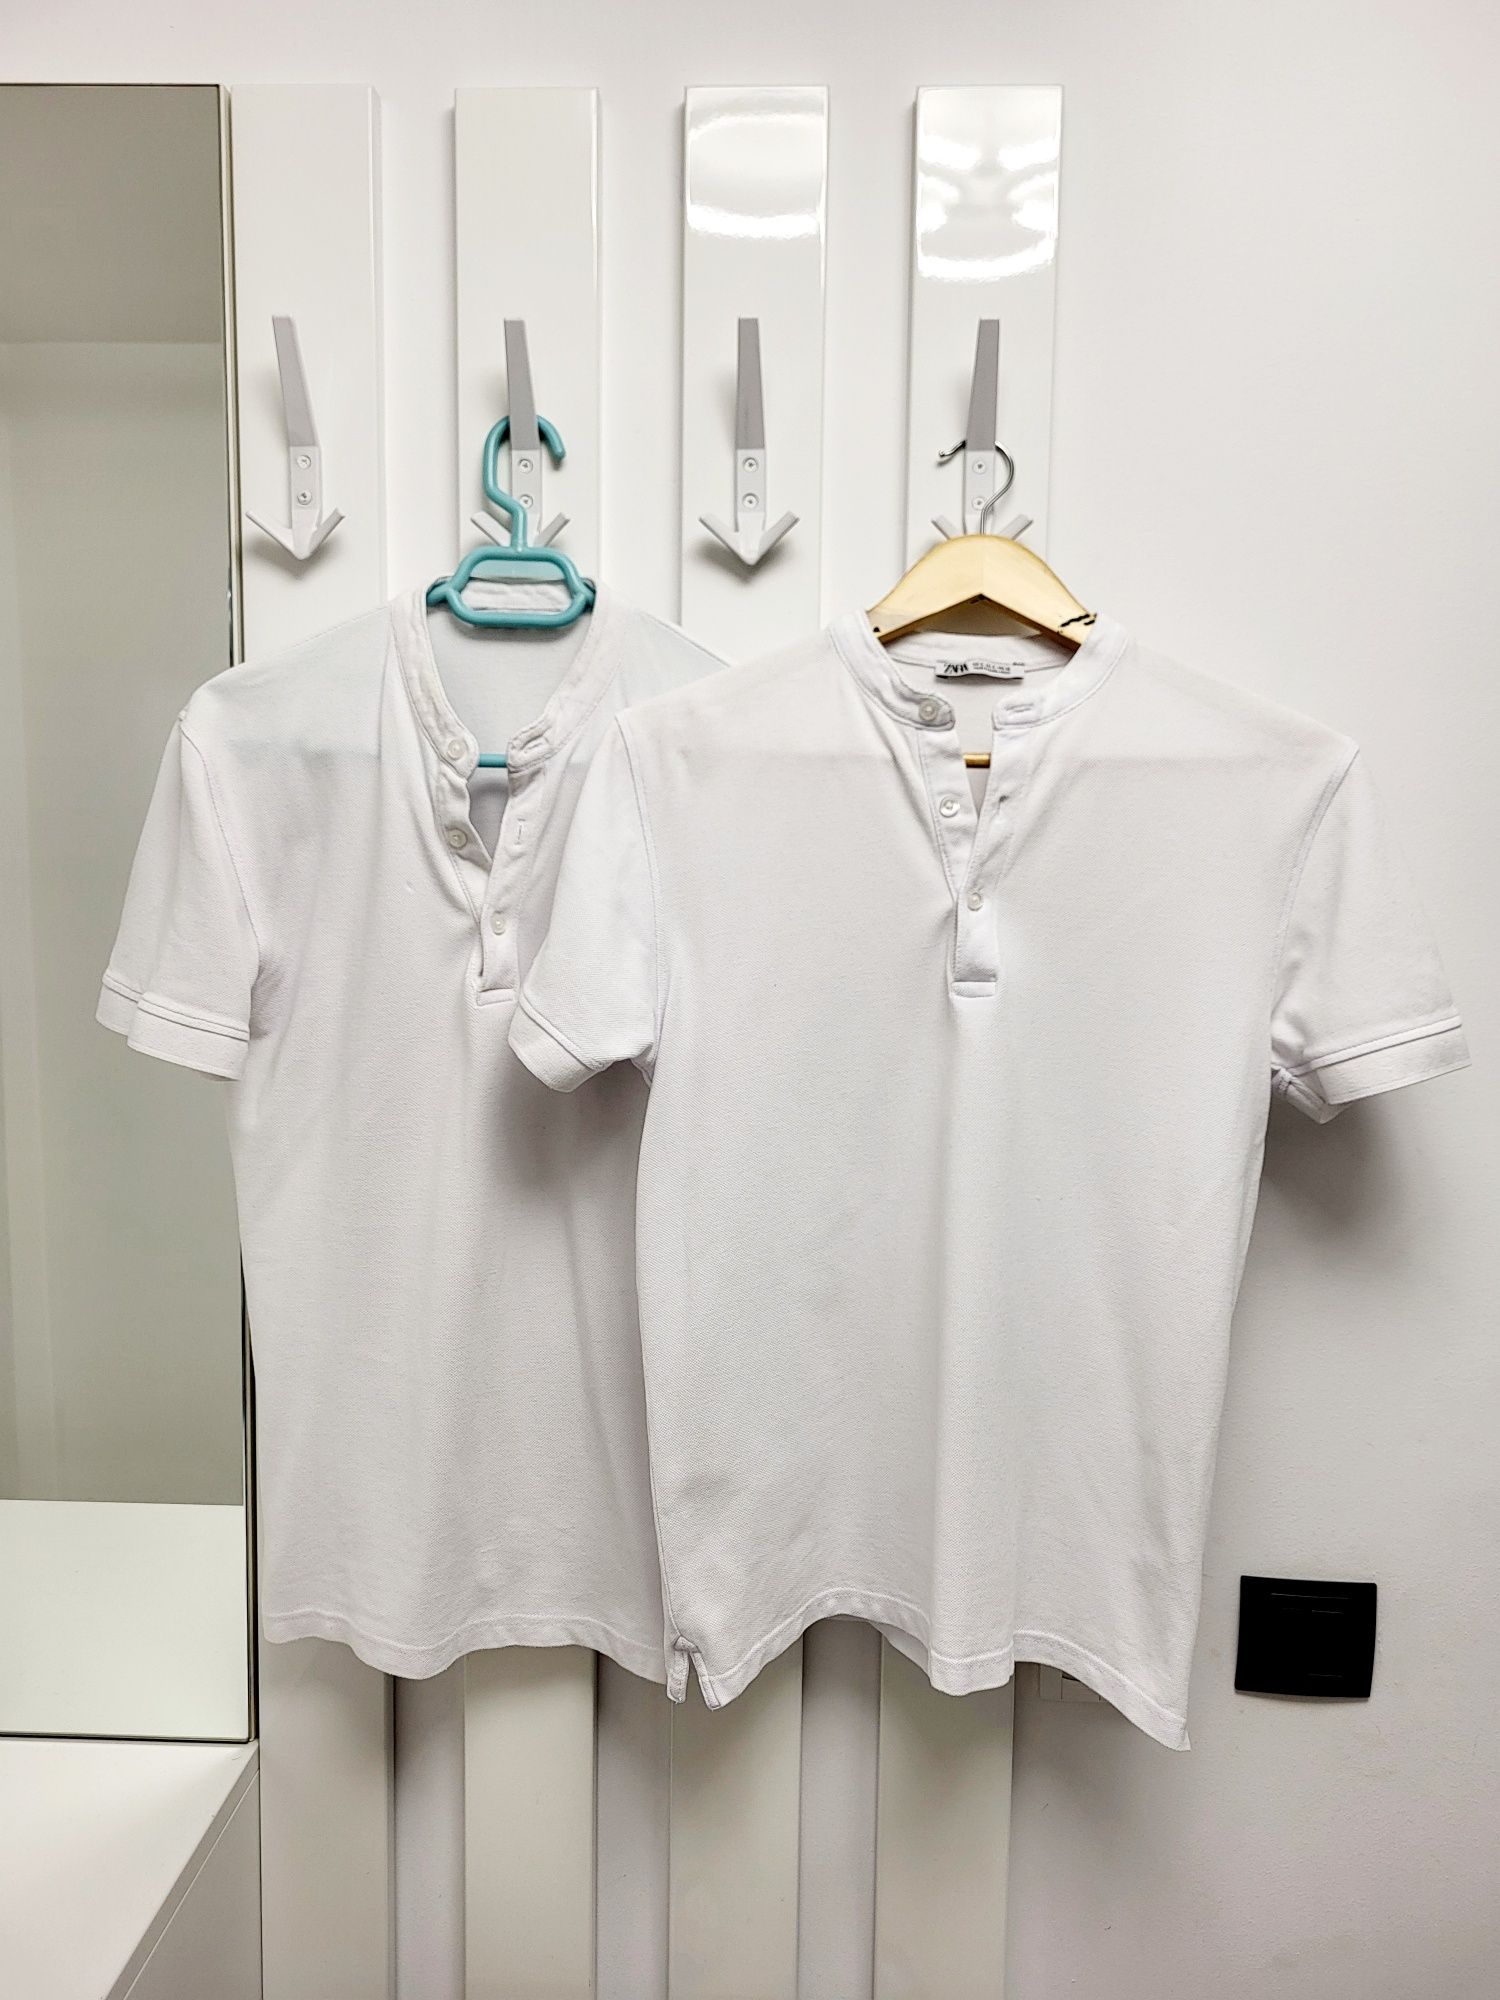 Tricou alb Zara S bărbați 50% REDUCERE